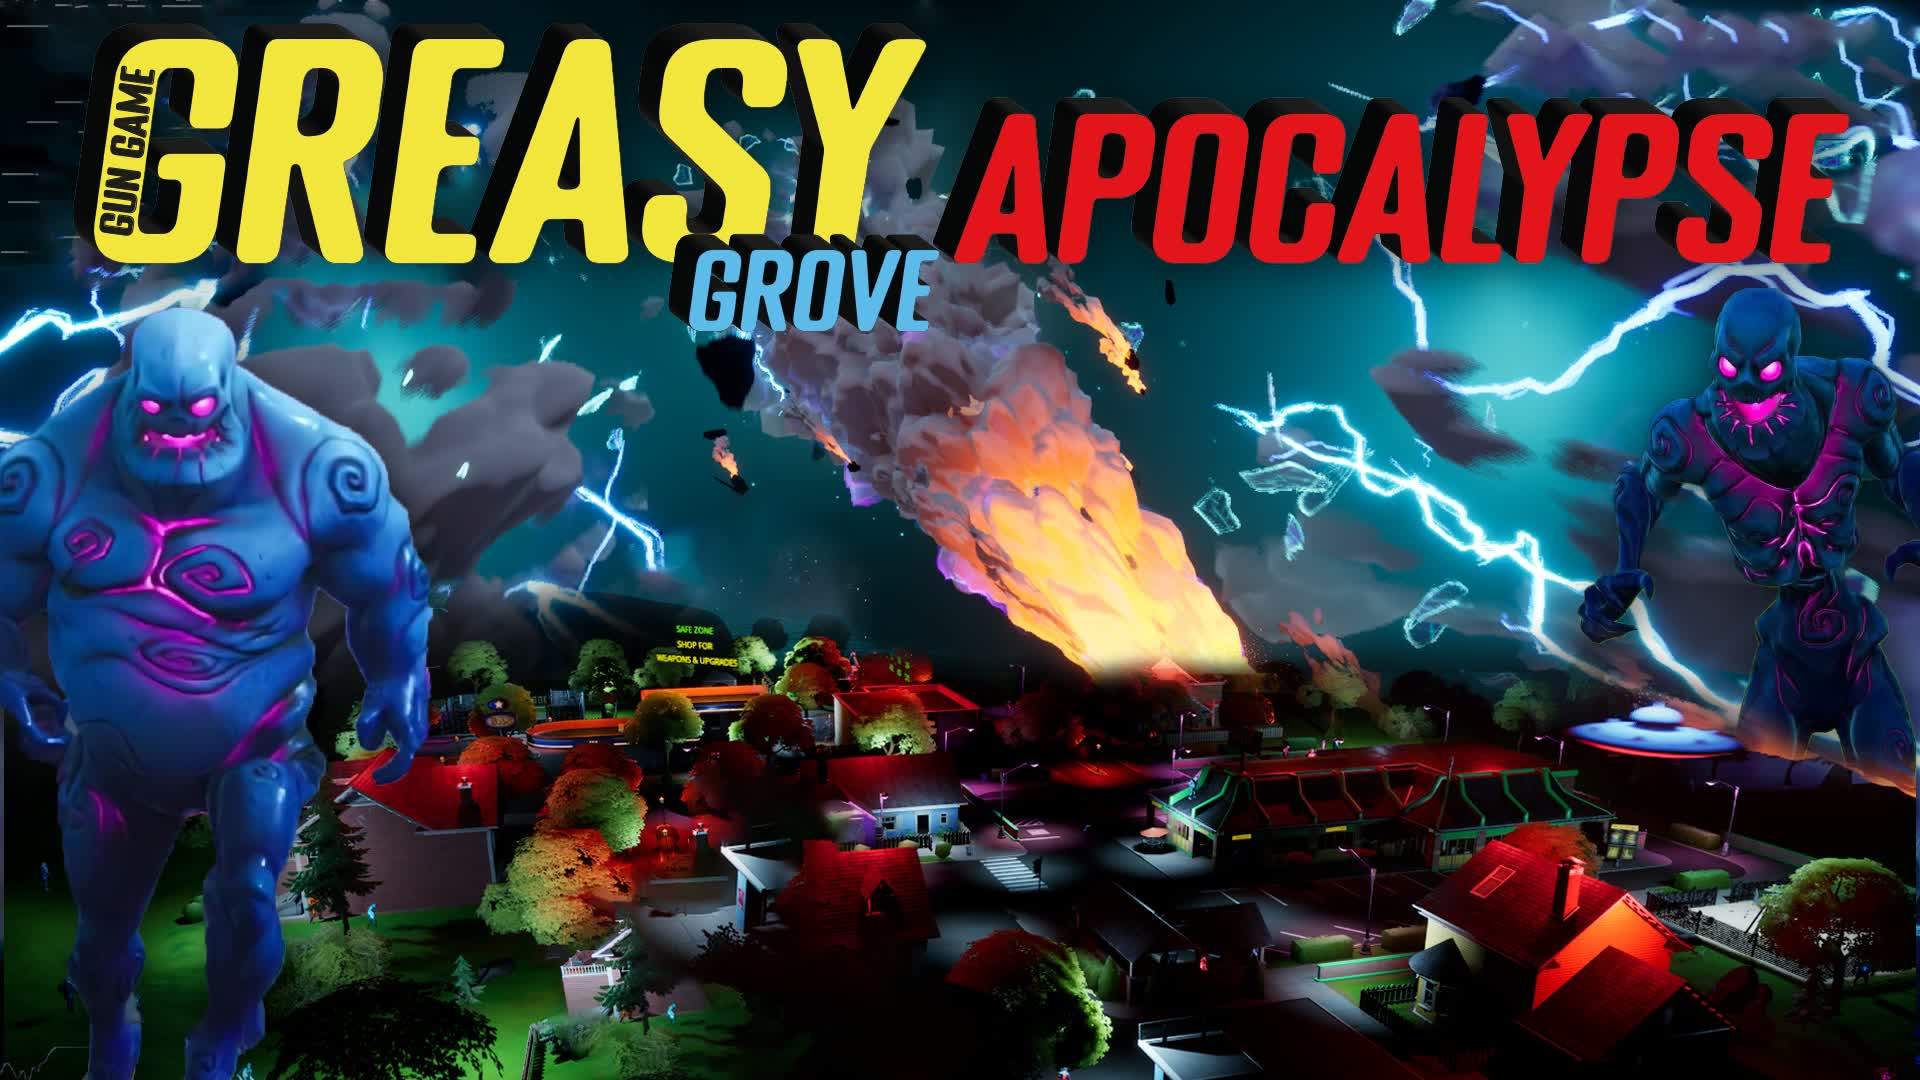 Greasy Grove Apocalypse (GunGame)